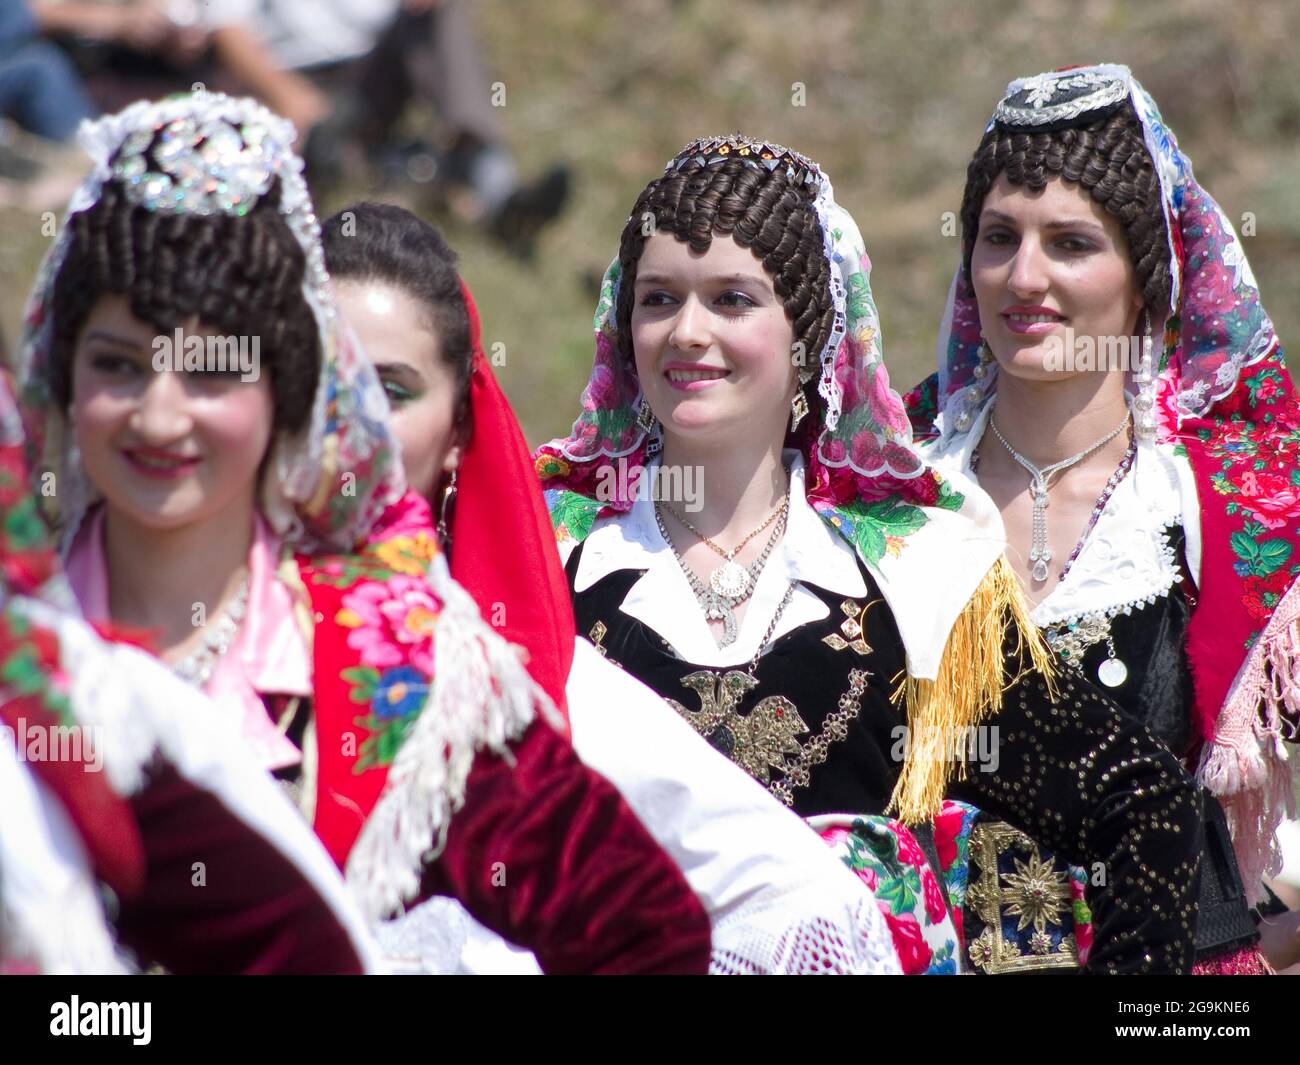 Lepushe, Albanien - 11. August 2012: Parade von einigen Konkurrenten zu 'Miss Mountain 2012' (Albanisch: Miss Bjeshka 2012), in der Mitte von Frame sieben Stockfoto